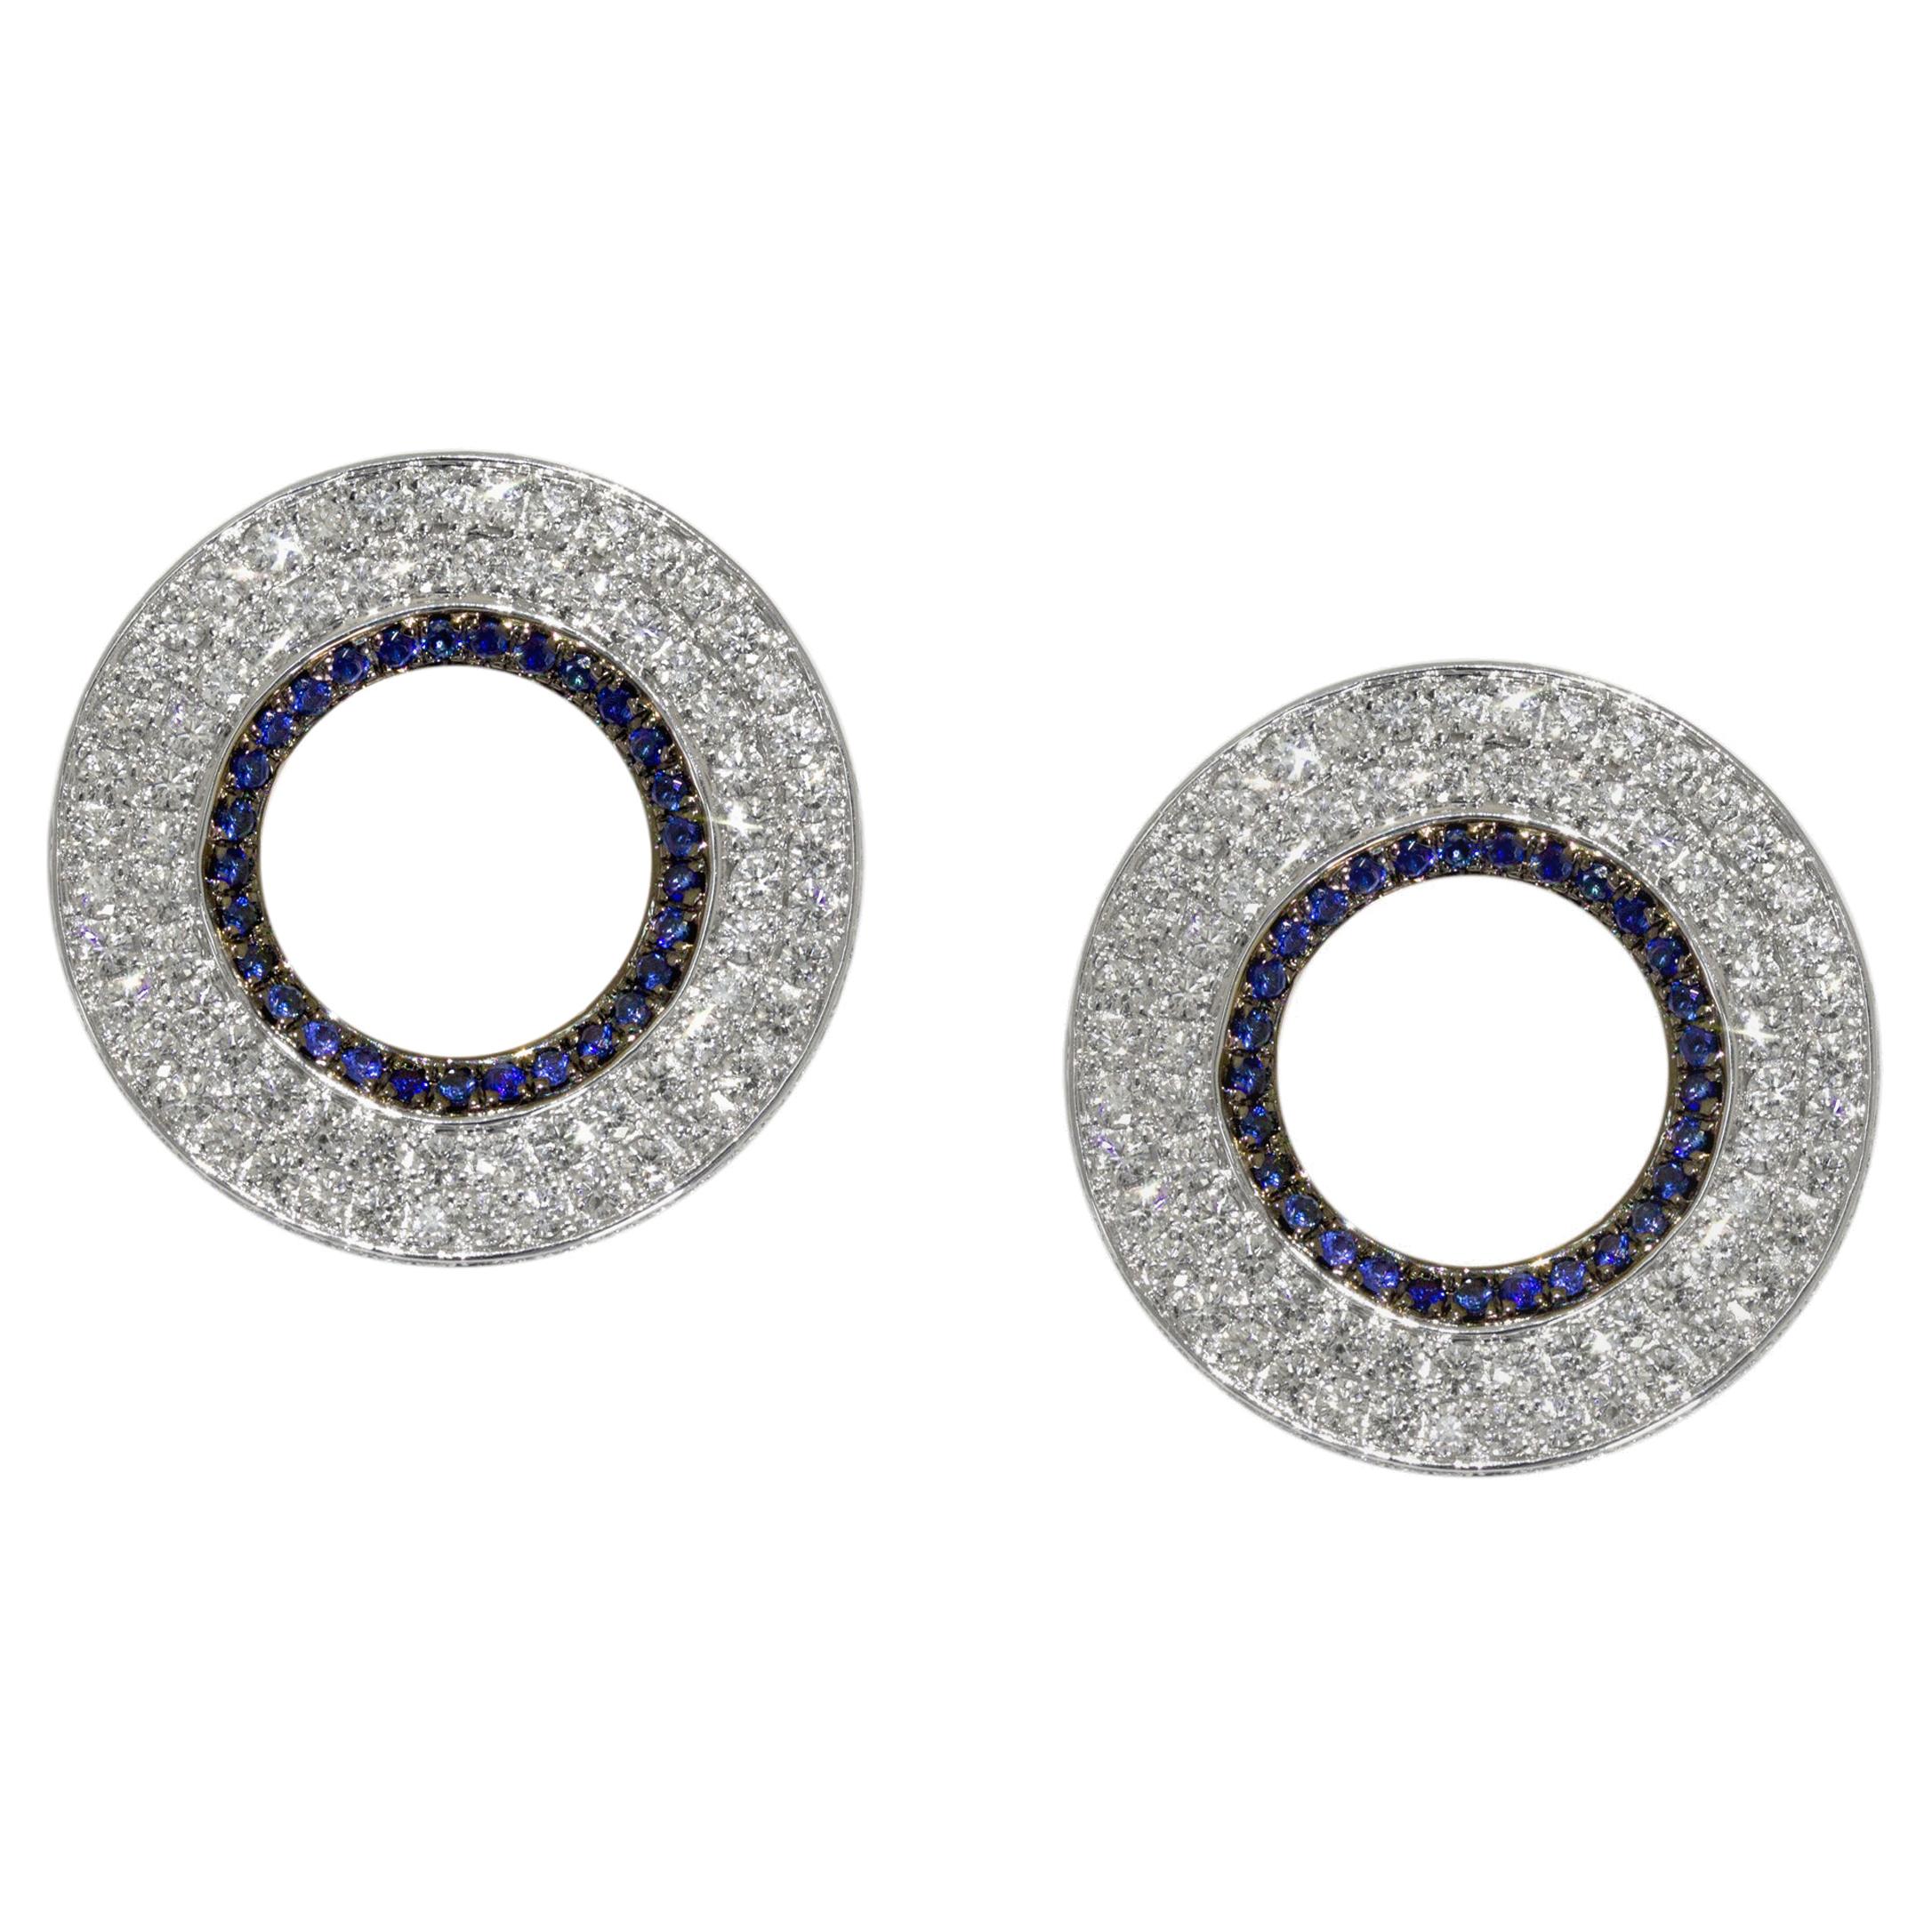 Modernistische kreisförmige Diamant- und Saphir-Ohrringe von Ralph Masri